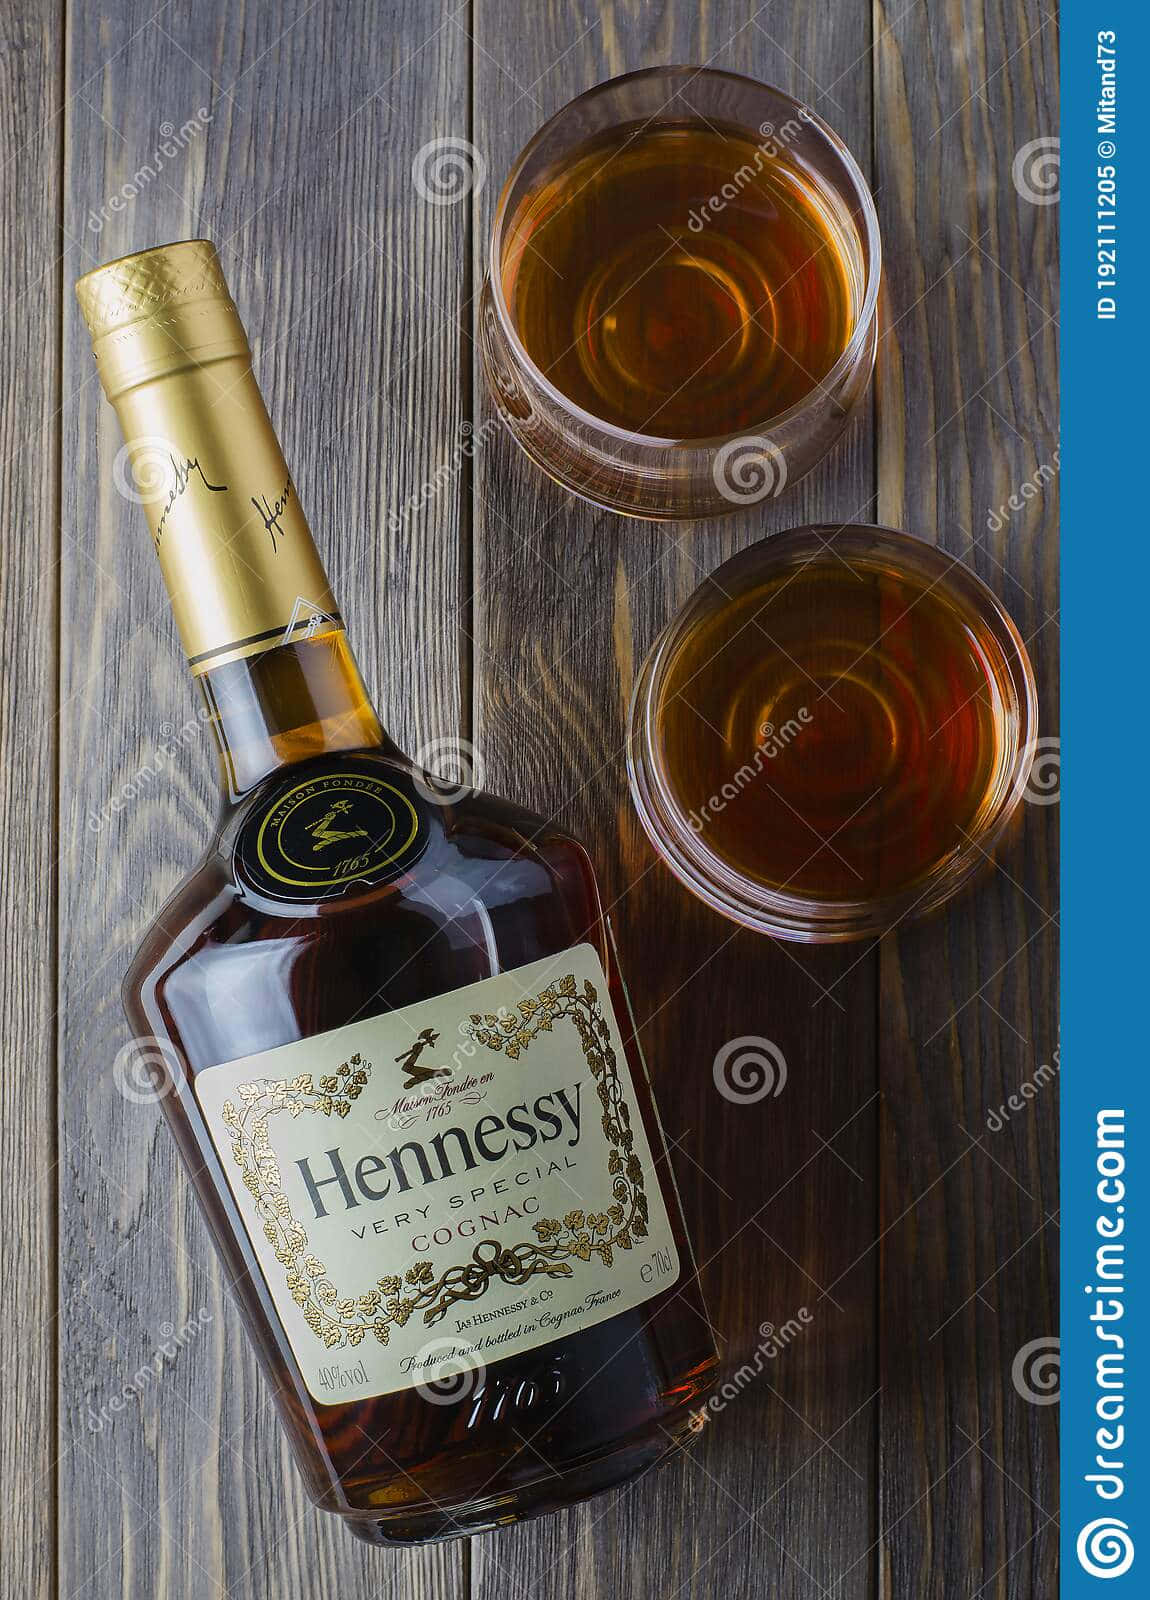 Hennessywhiskeyflaska Och Glas På Träbakgrund. Wallpaper